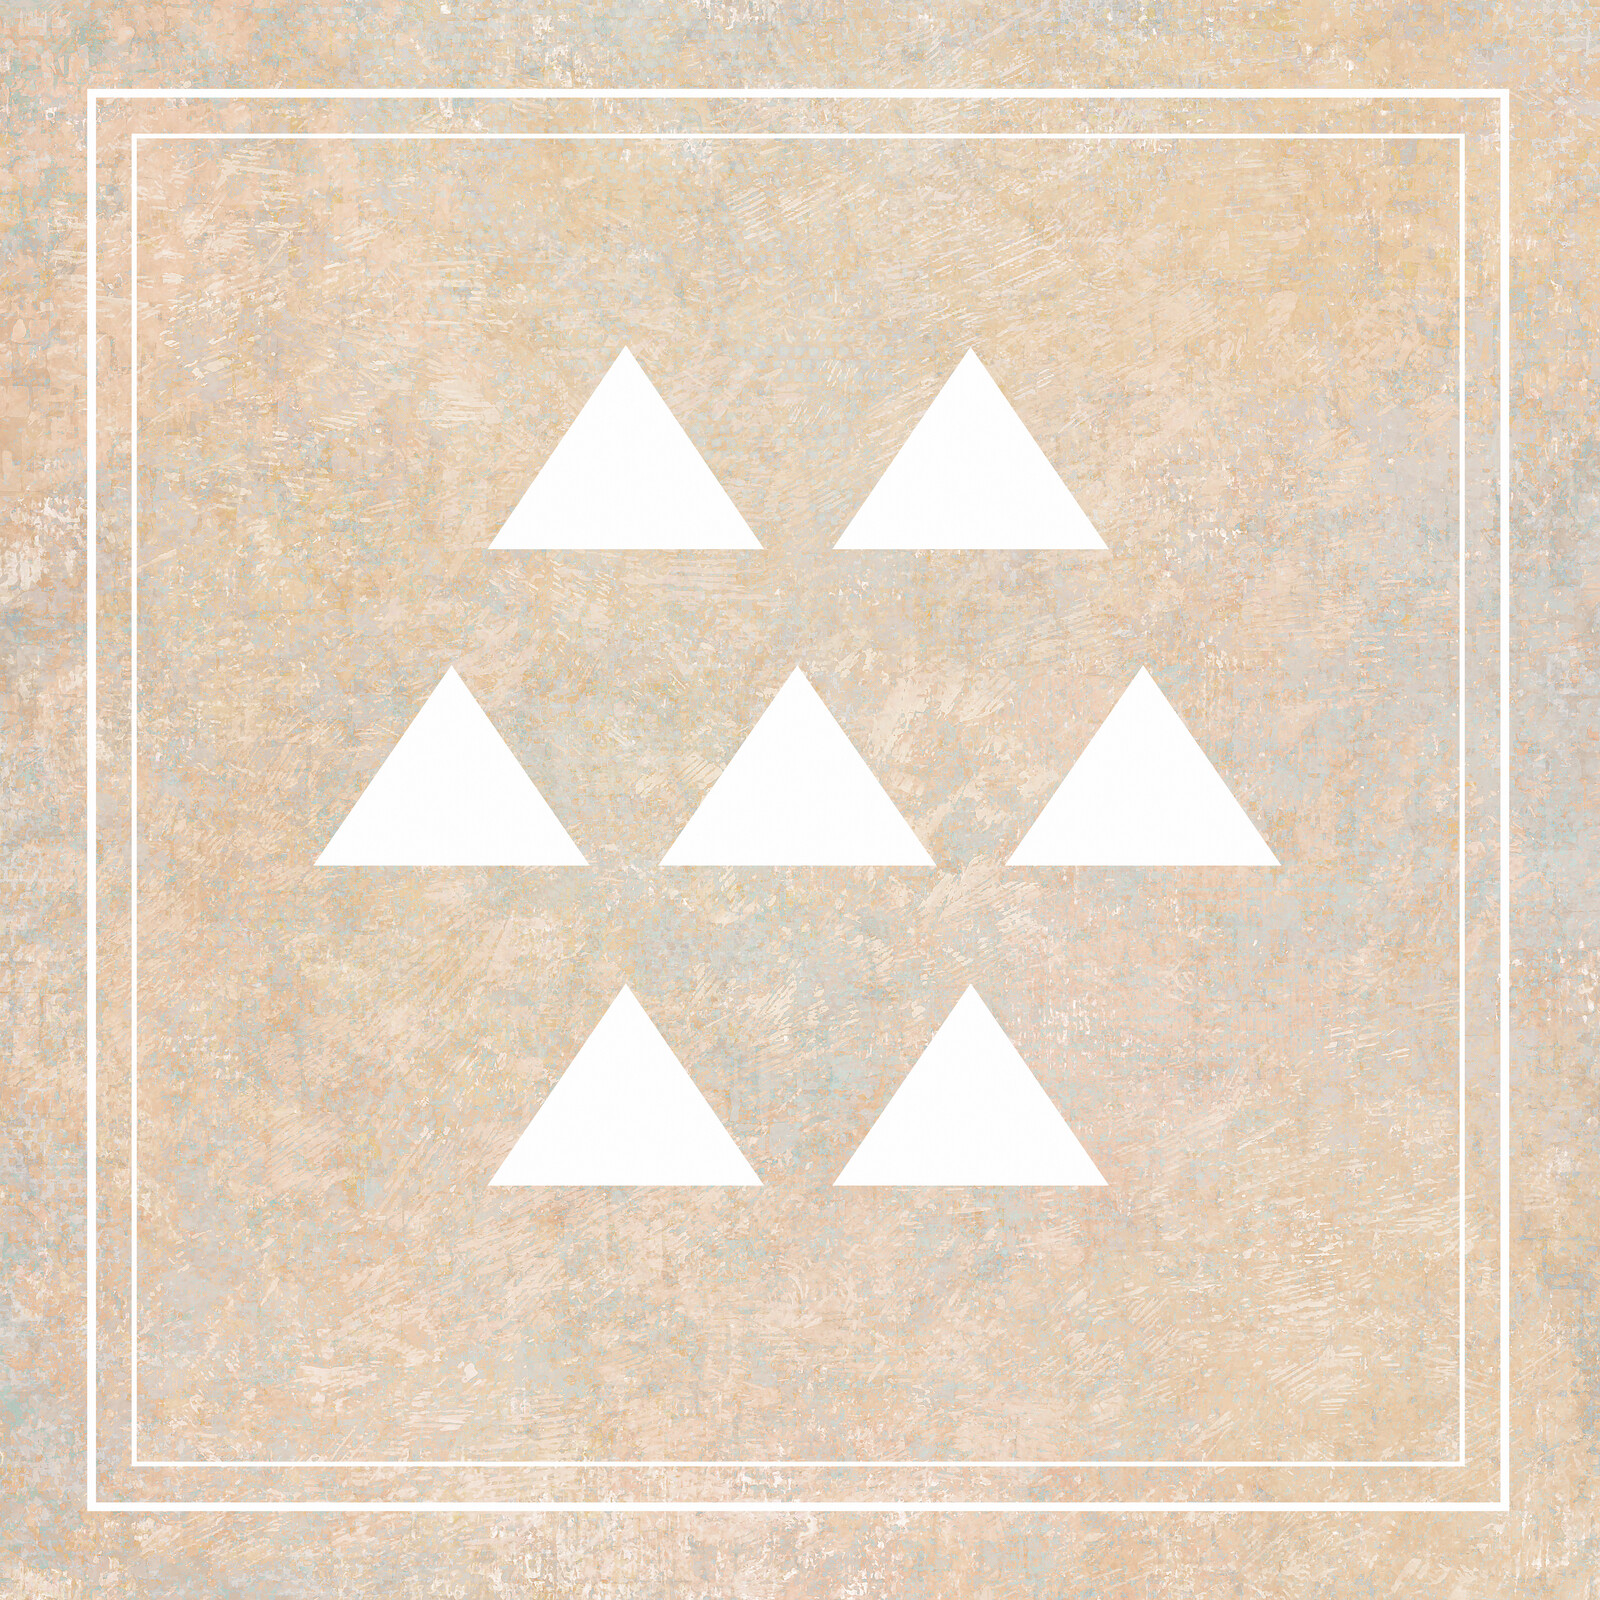 Seven small white triangles.